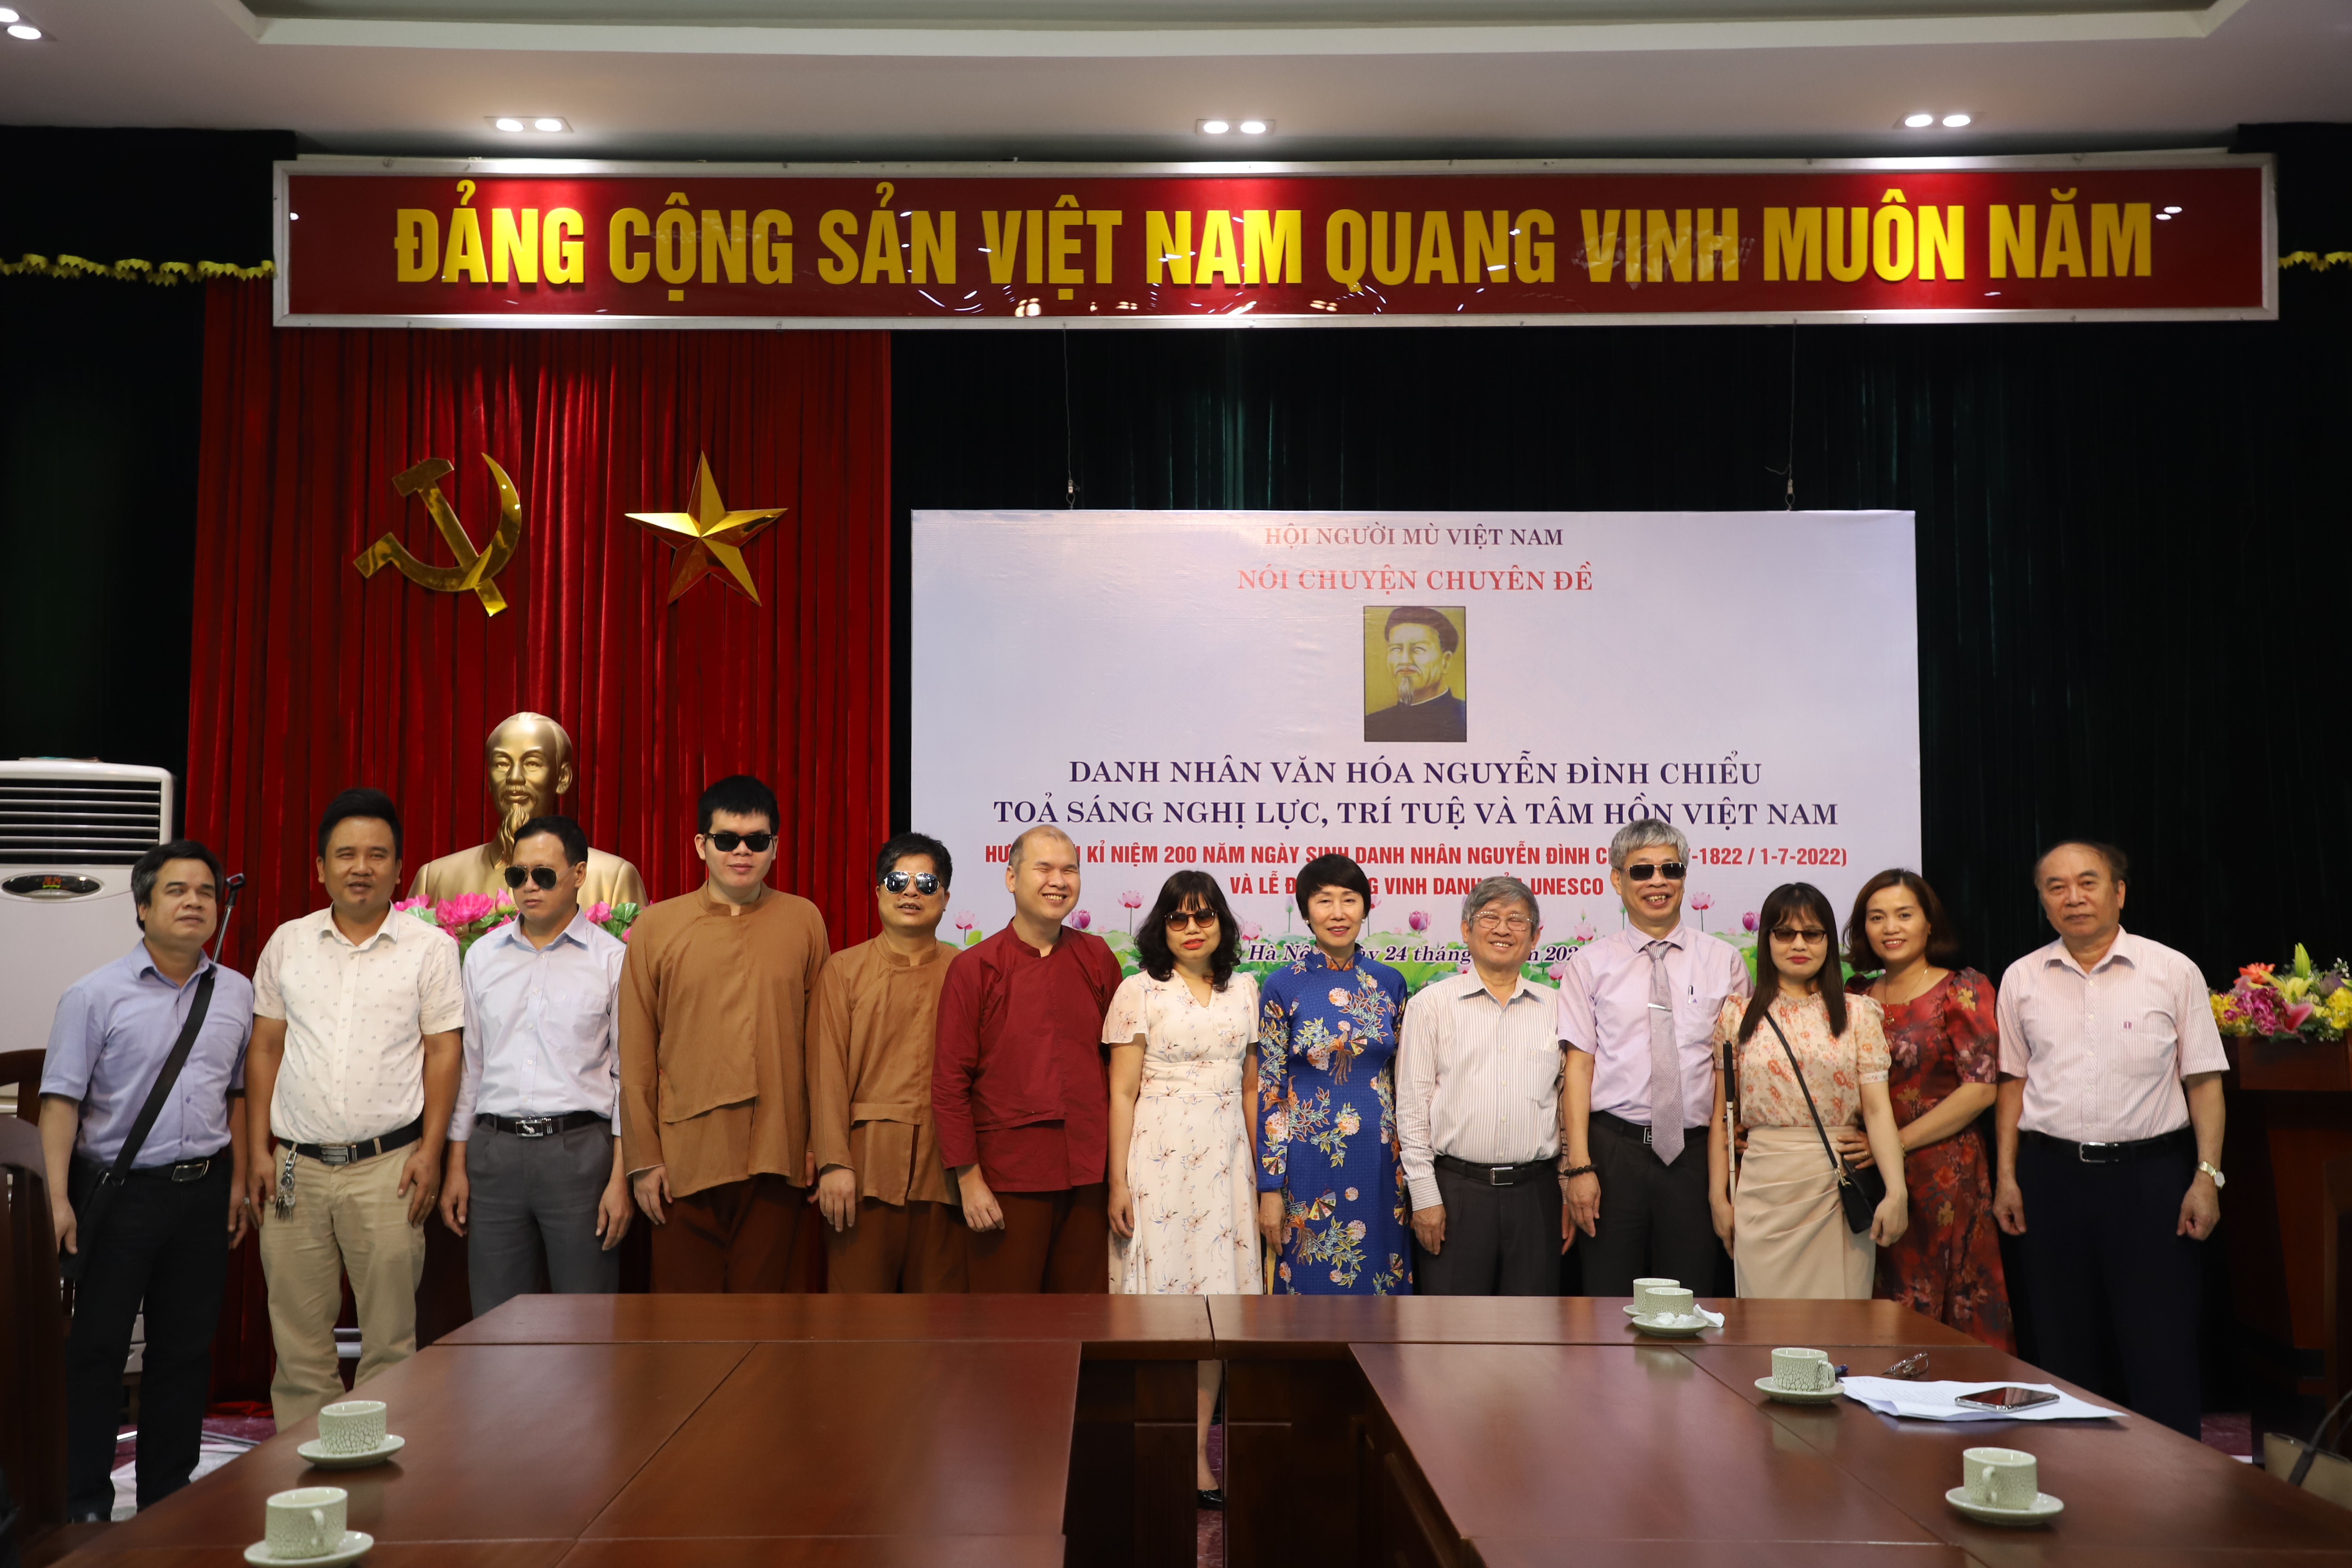 Hình ảnh: Danh nhân văn hóa Nguyễn Đình Chiểu tỏa sáng nghị lực, trí tuệ và tâm hồn Việt Nam